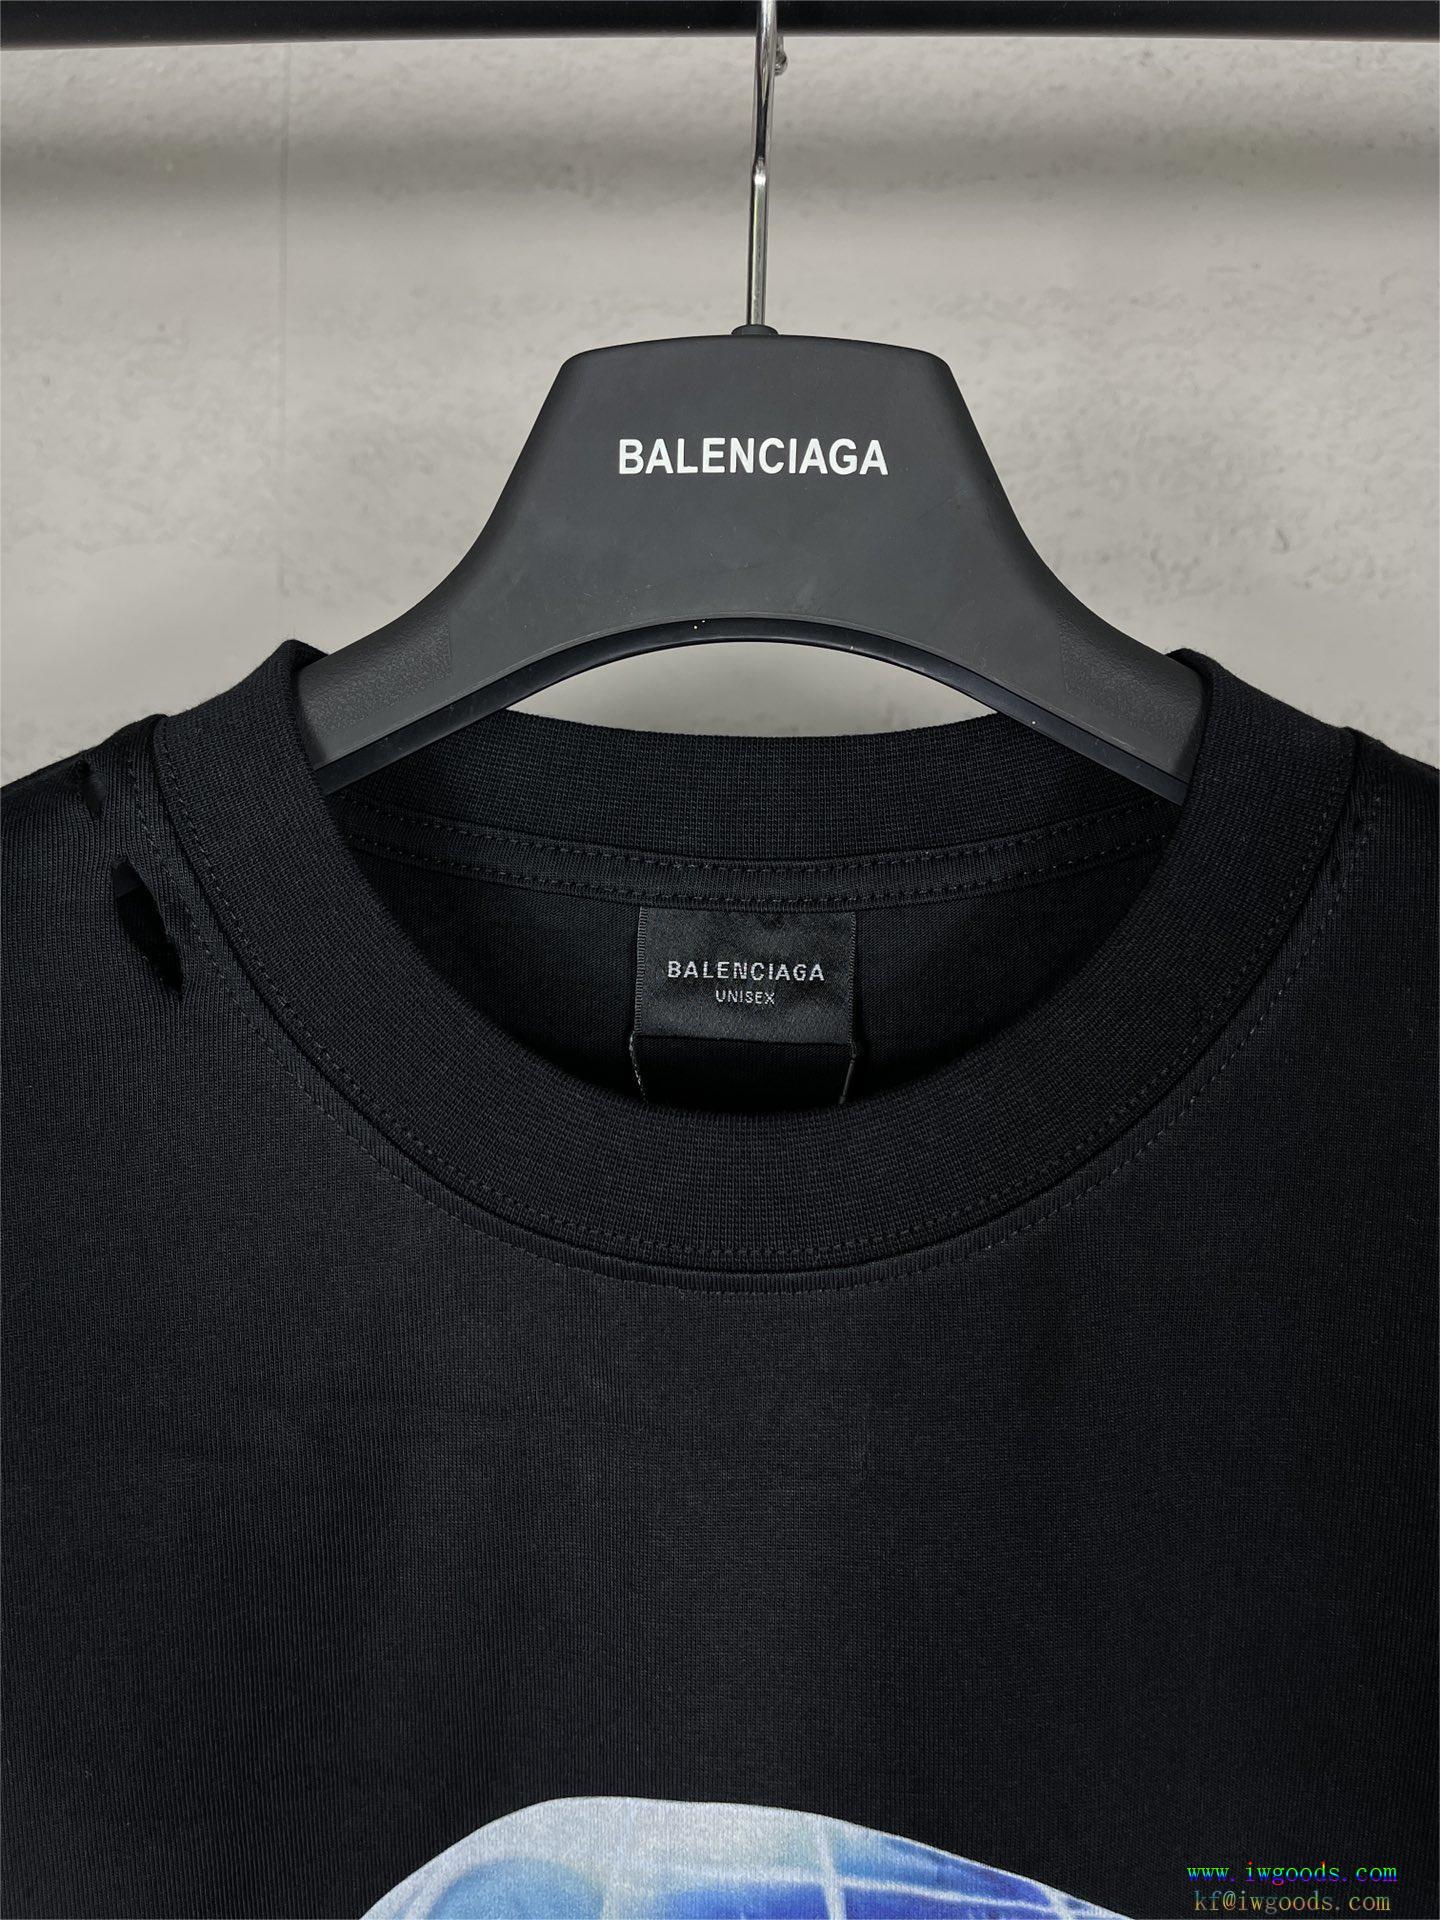 バレンシアガBALENCIAGA半袖Tシャツ【ユニセックス】偽 ブランド 販売,バレンシアガBALENCIAGAスーパー コピー どこで 買える